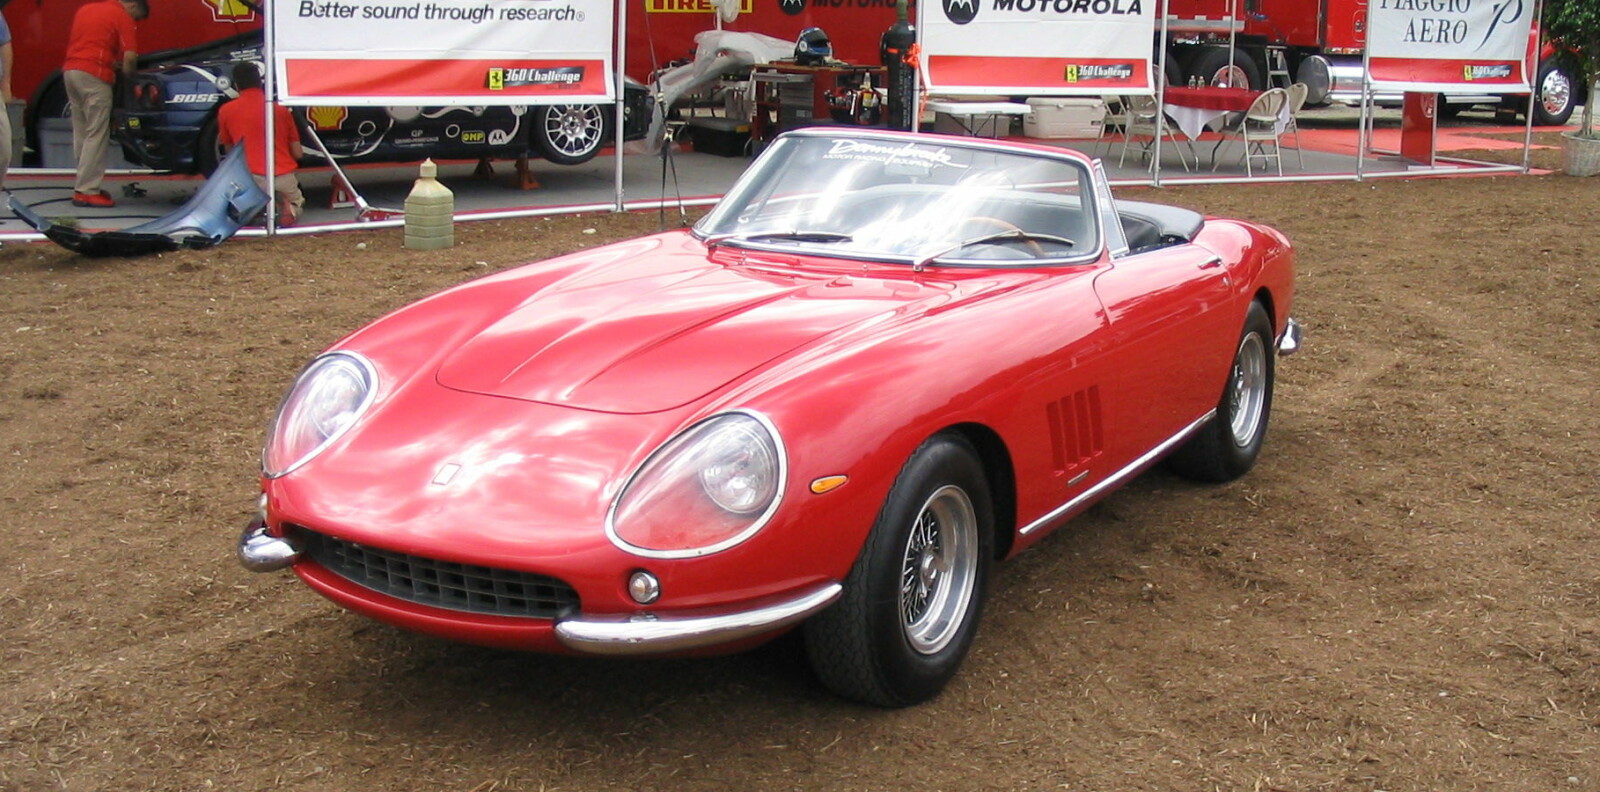 <b>SJELDEN BIL:</b> Det var en slik 1967 Ferrari 275 GTB/4*S NART Spider som ble solgt for cirka 247 millioner kroner i 2013.